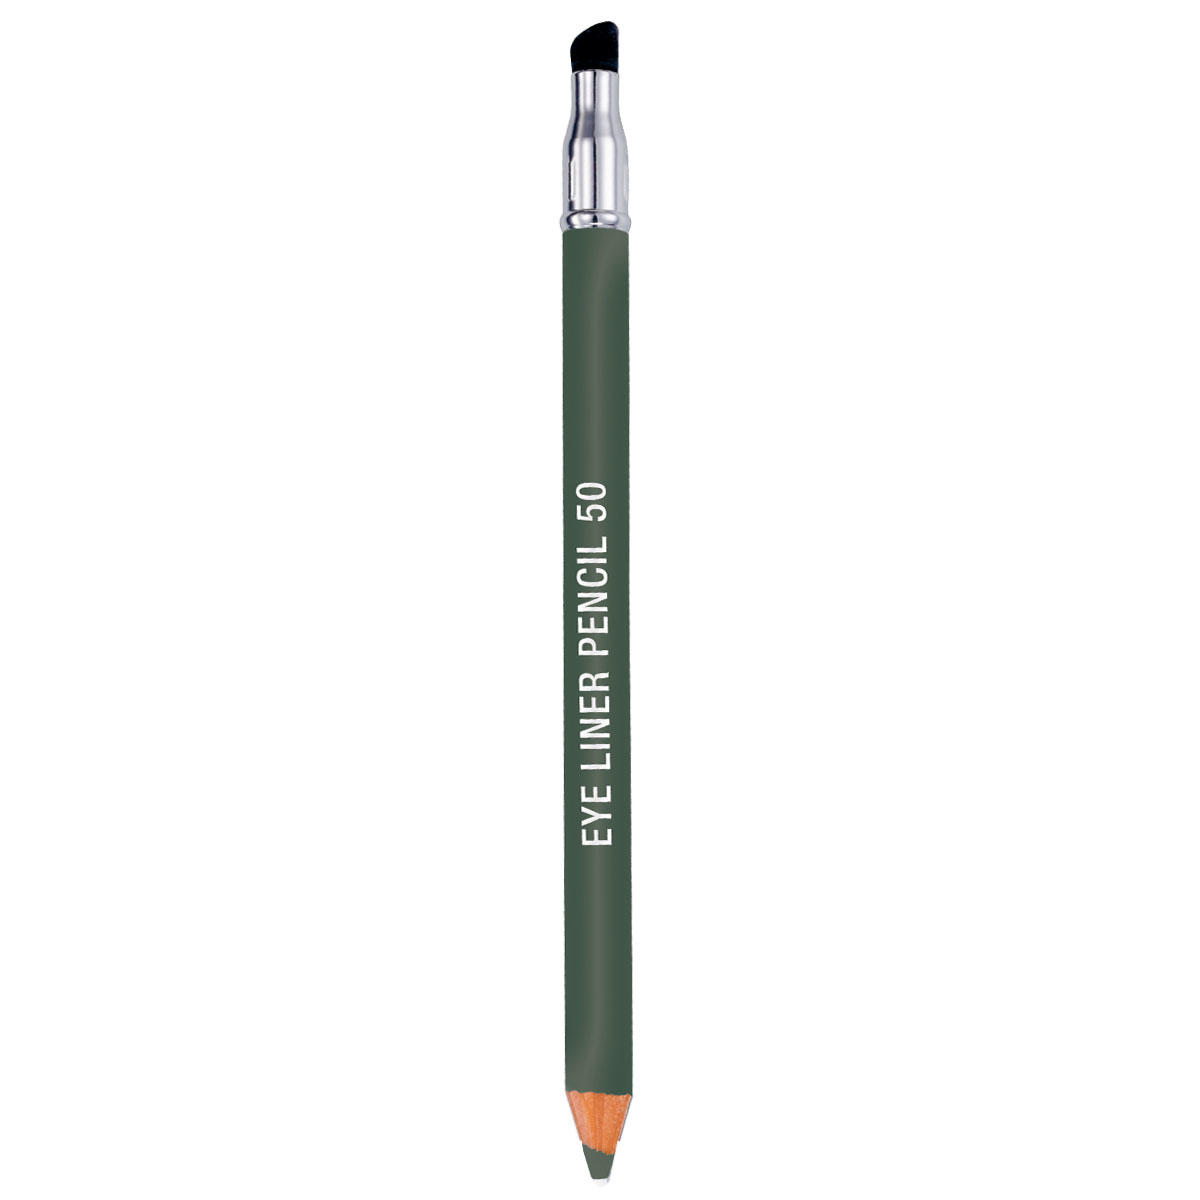 GERTRAUD GRUBER GG naturell Eye Liner Pencil 50 grün